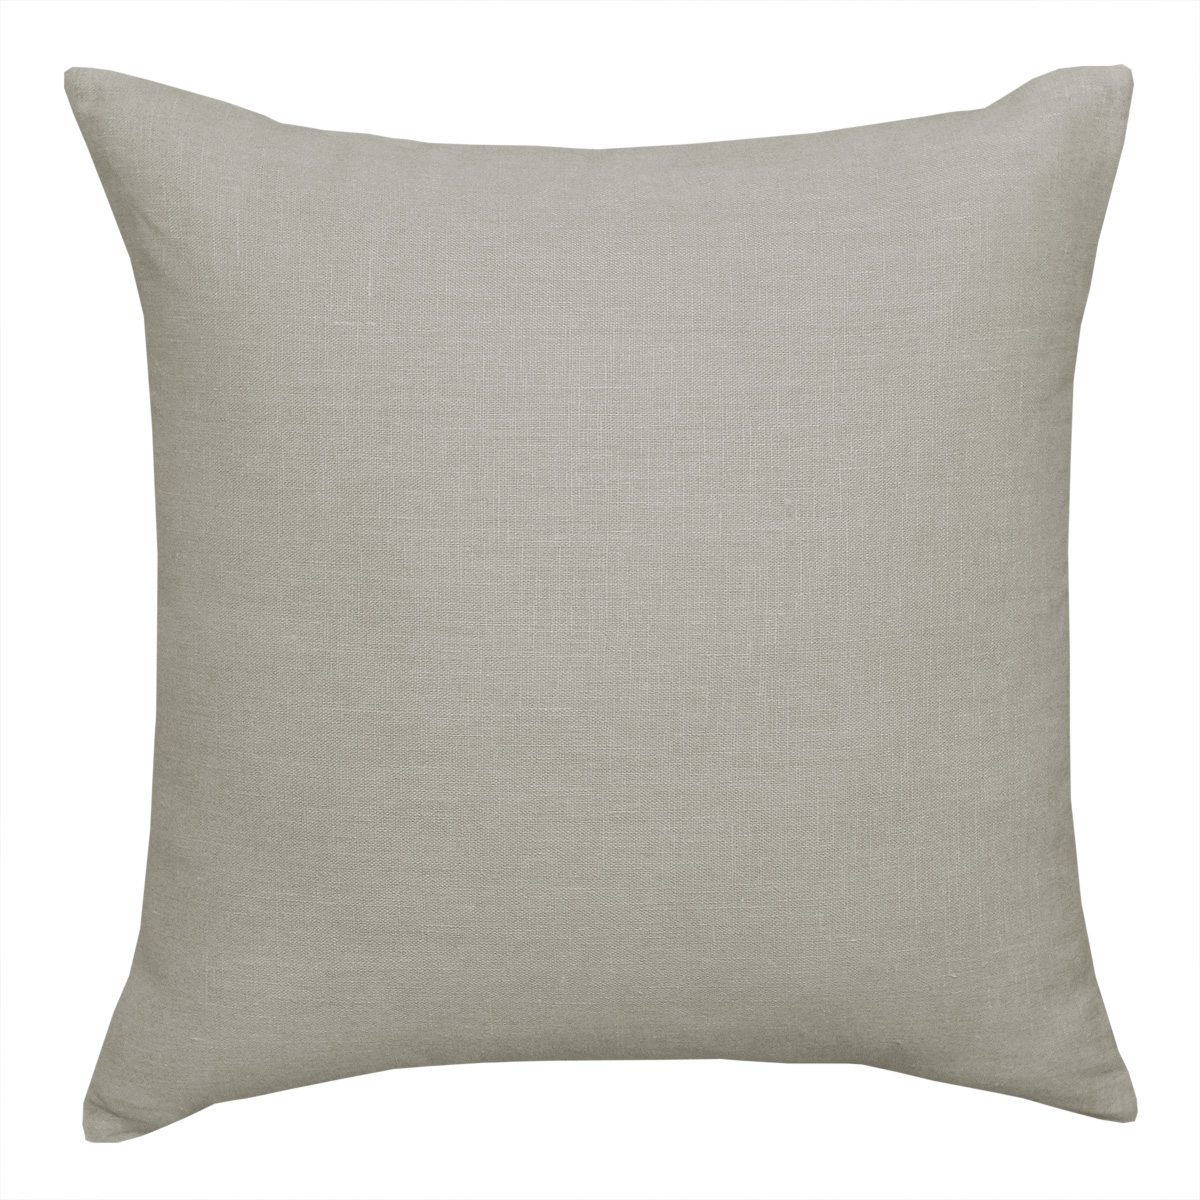 European Linen Oatmeal Cushion - 45x45cm